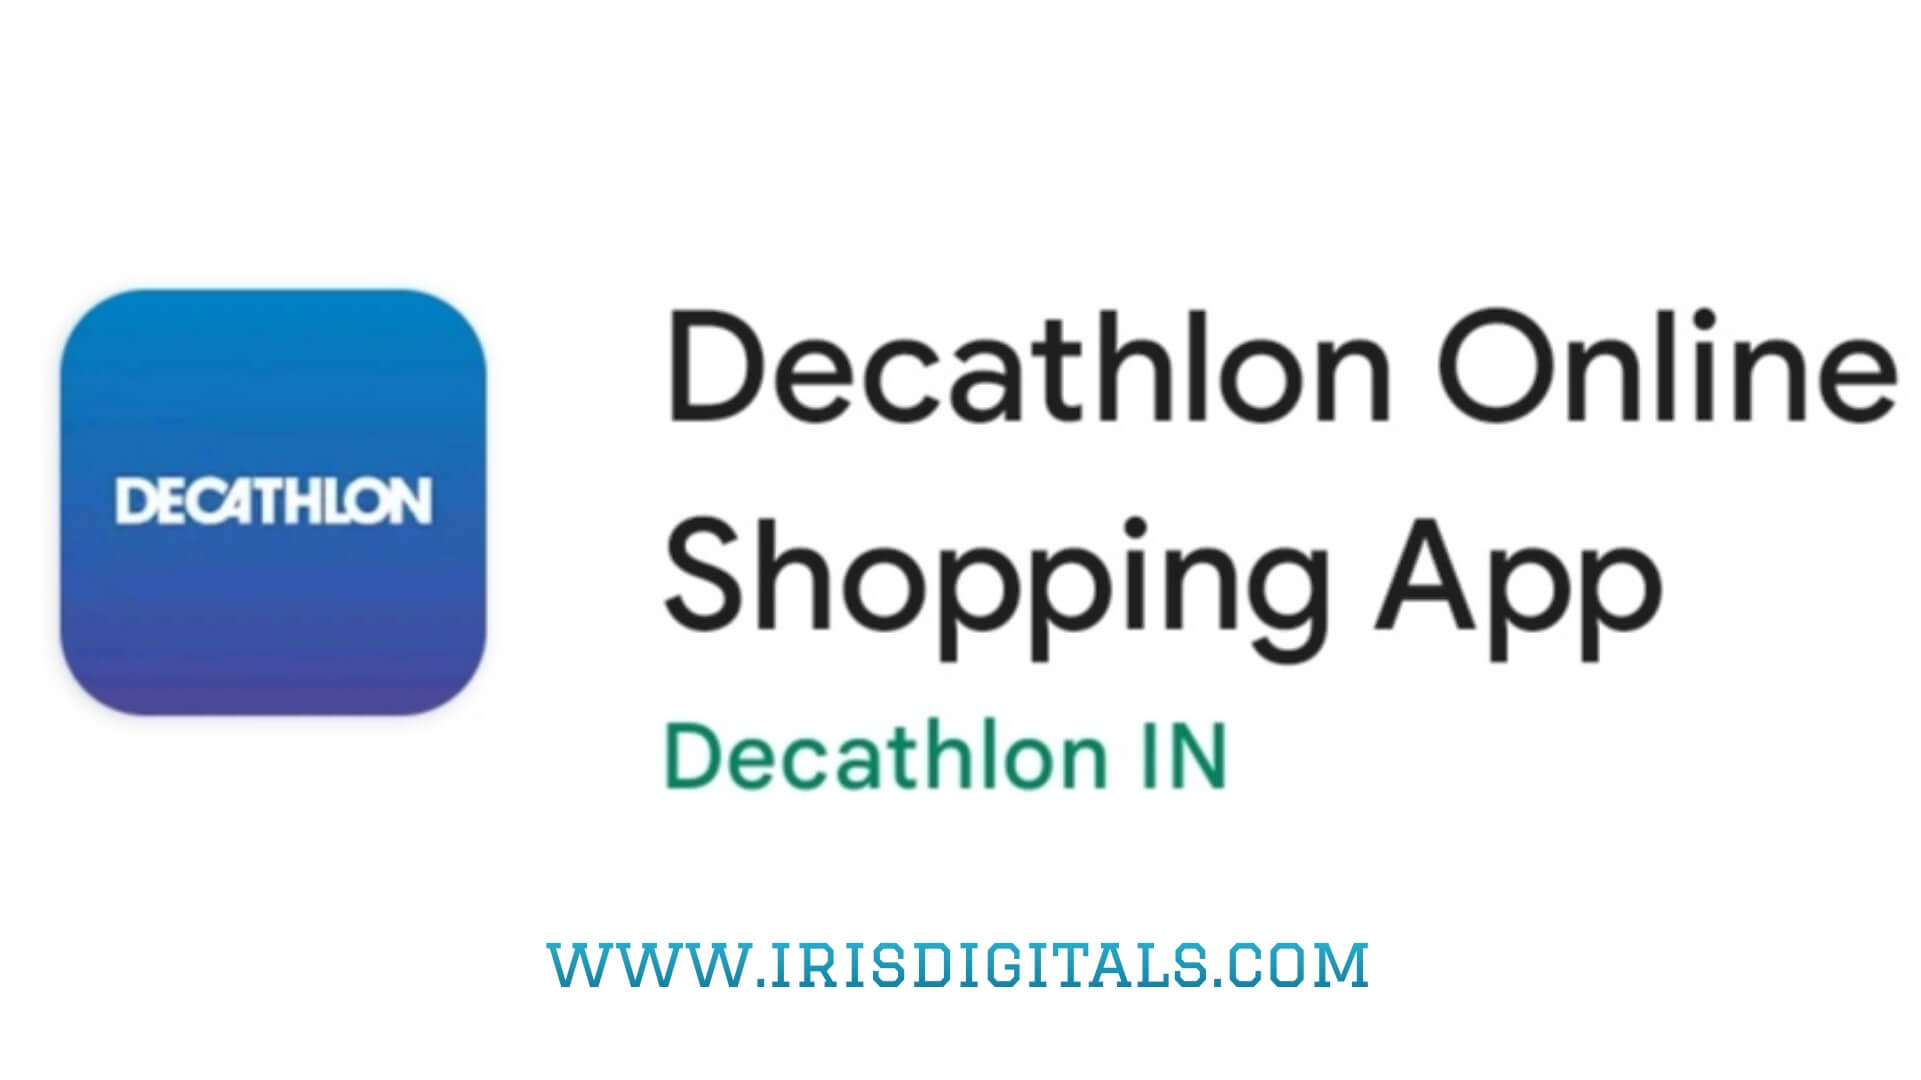 Decathlon Online Shoping App For Sporting Goods